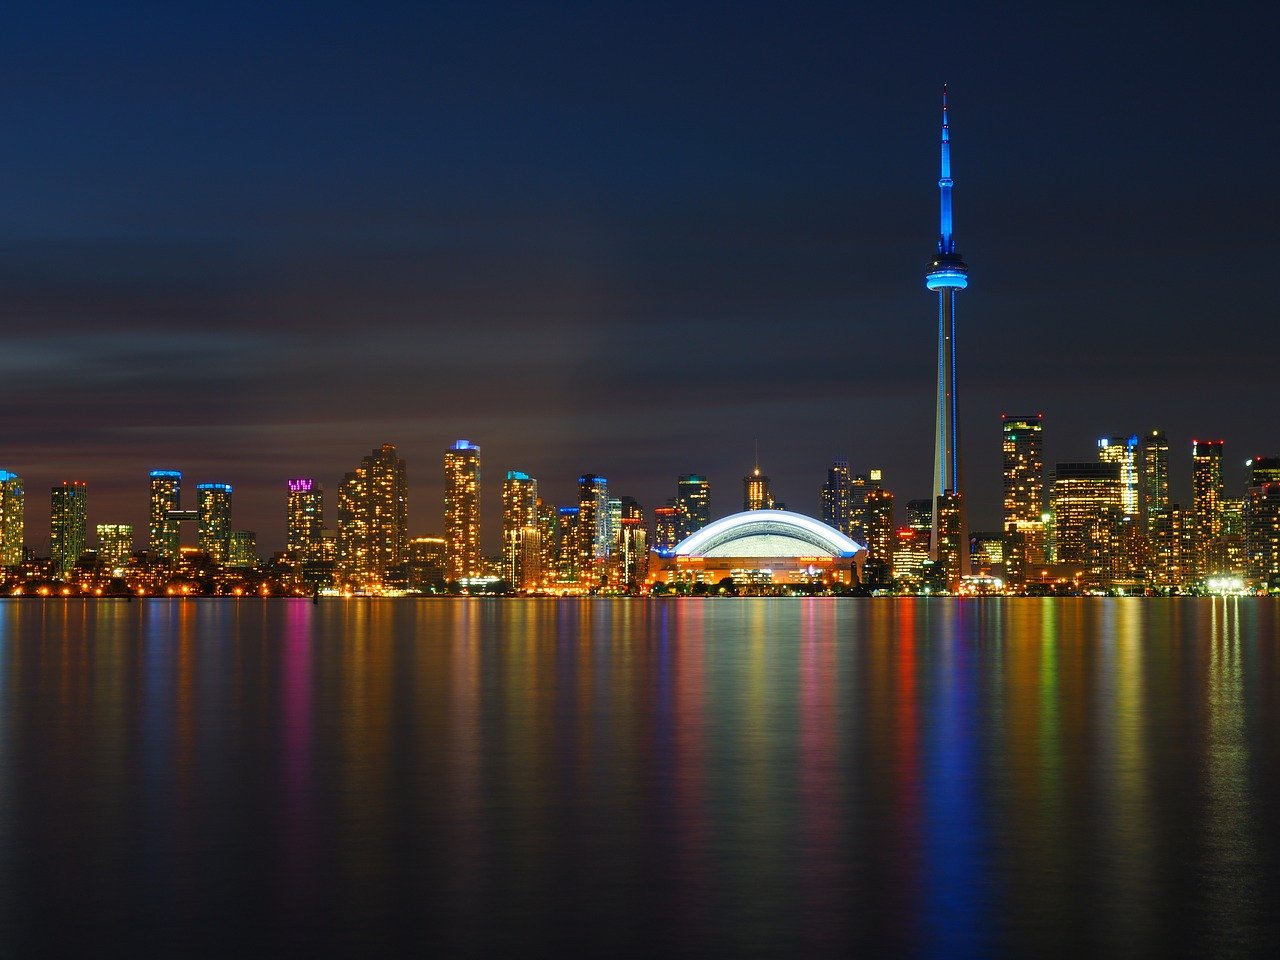 Toronto skyline at night from Lake Ontario.